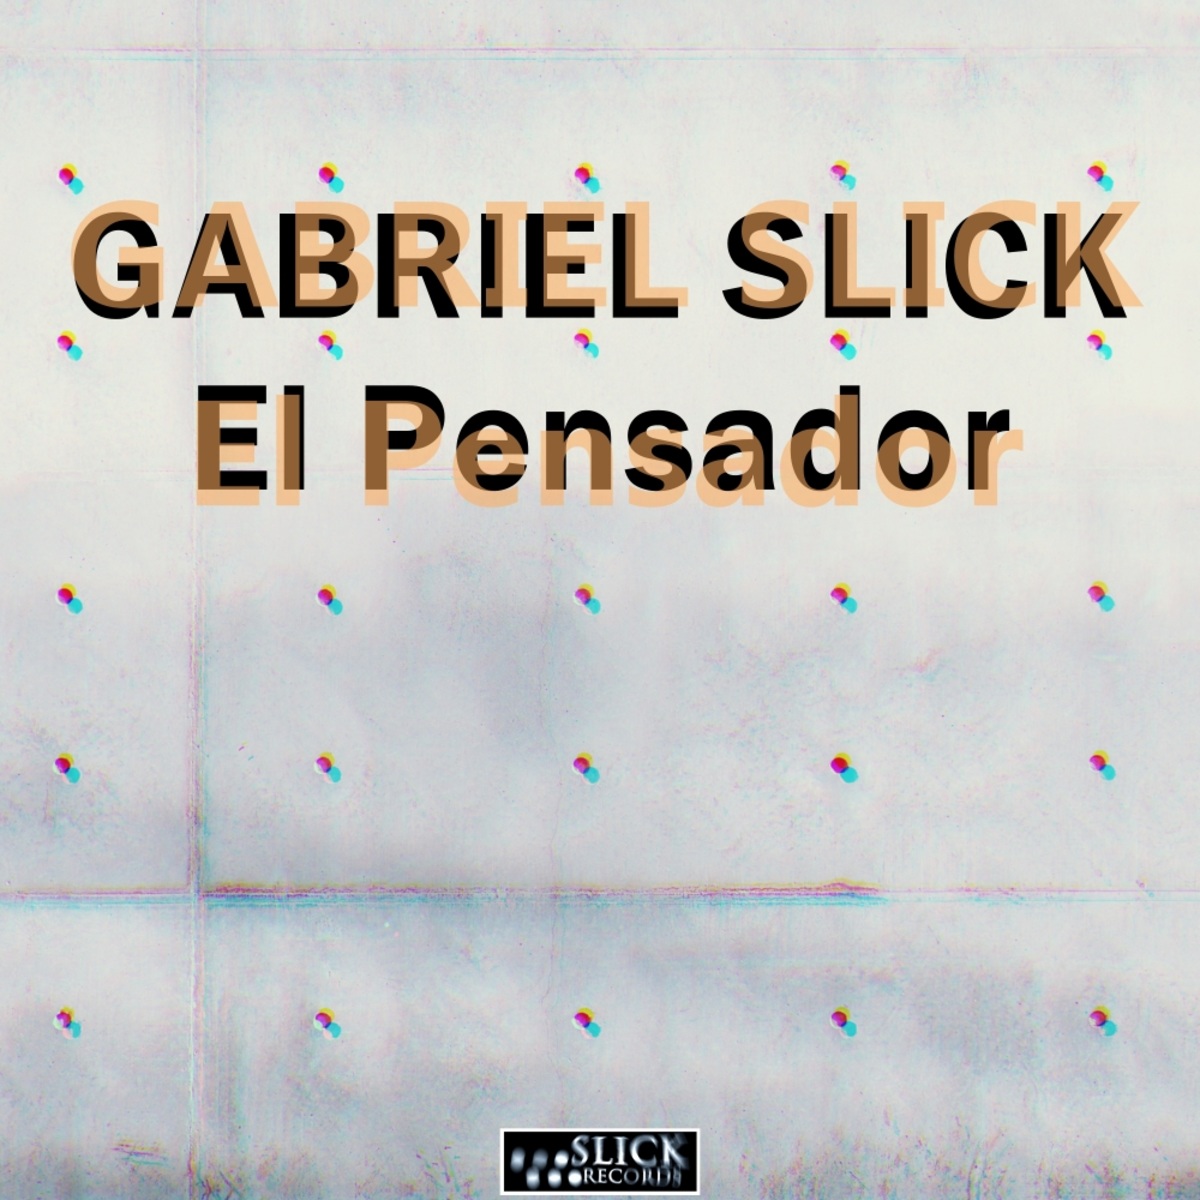 Gabriel Slick - El Pensador / SLiCK Records